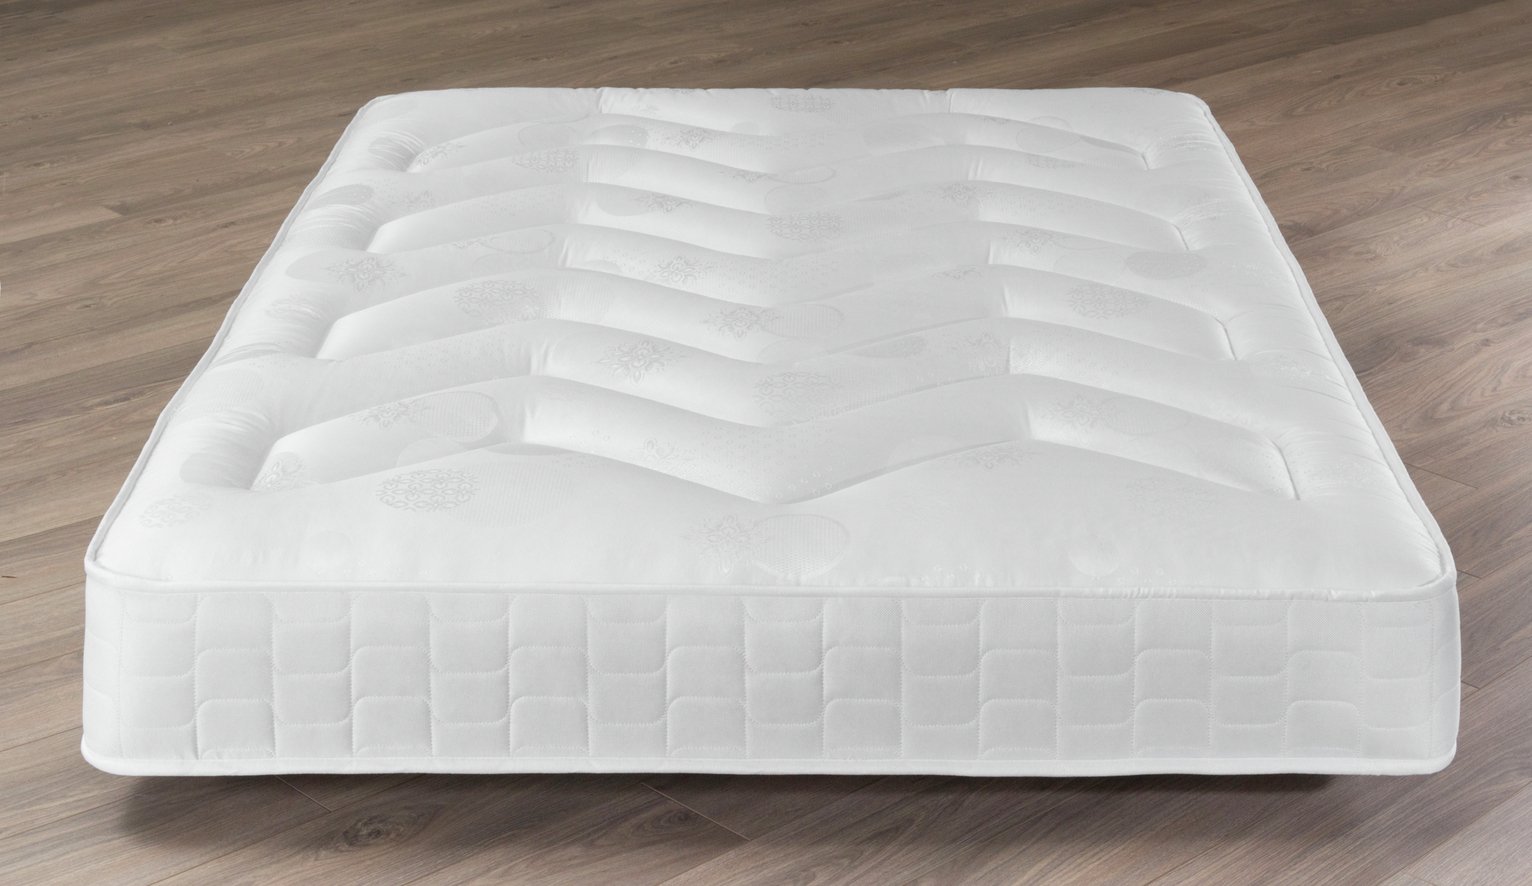 hauck sleeper folding mattress argos